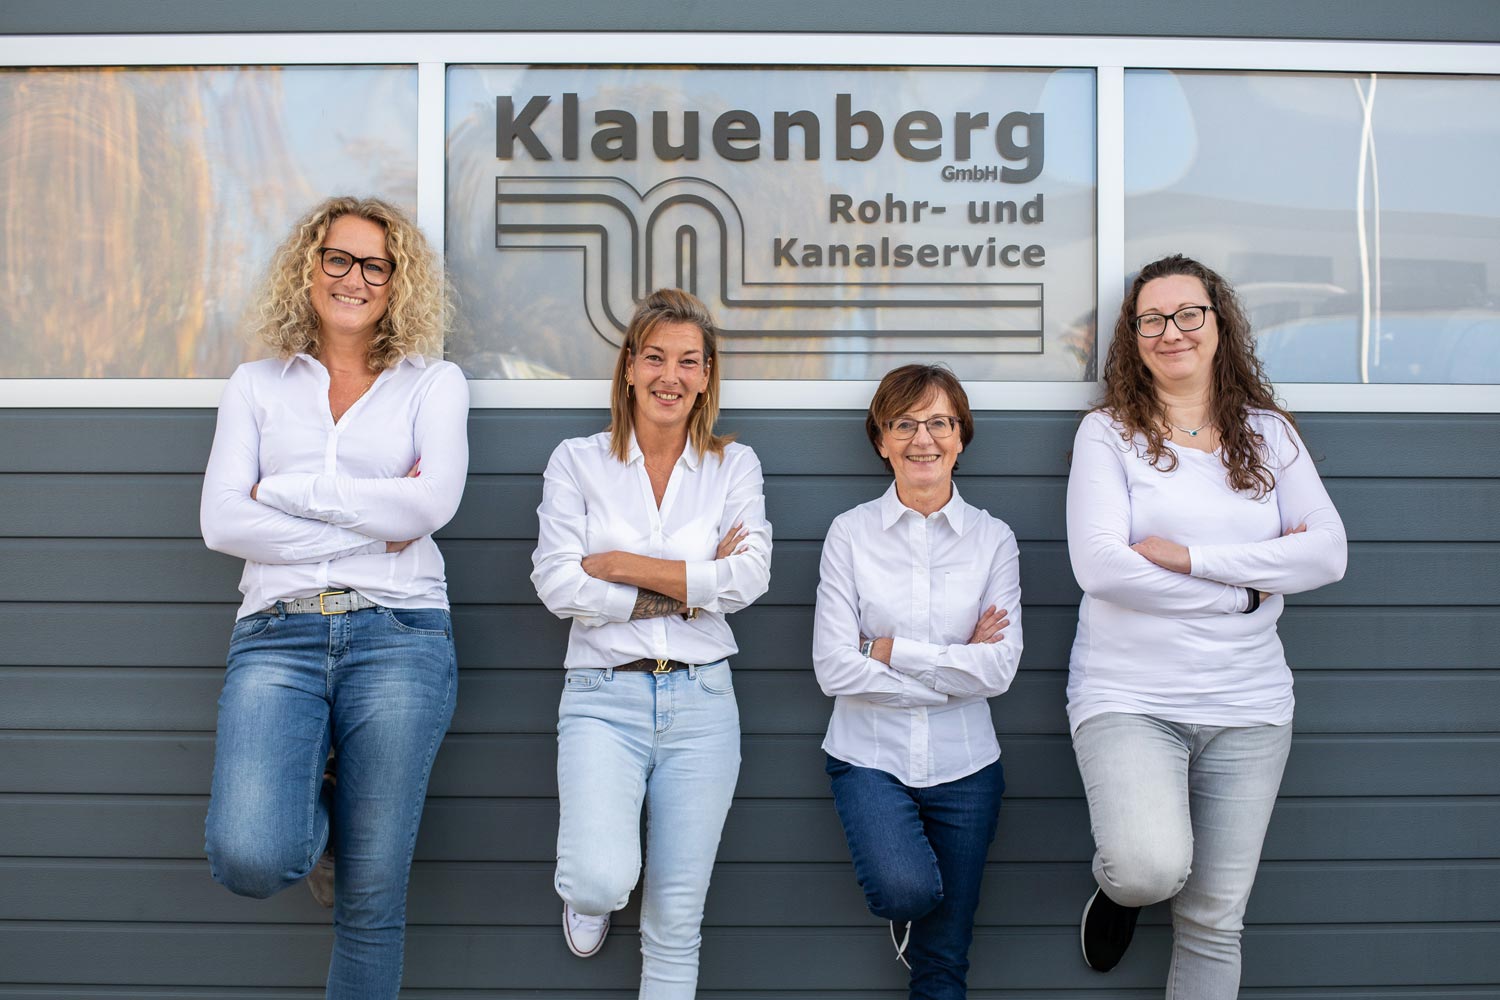 Bild 2 Klauenberg GmbH Rohr- und Kanalservice in Braunschweig